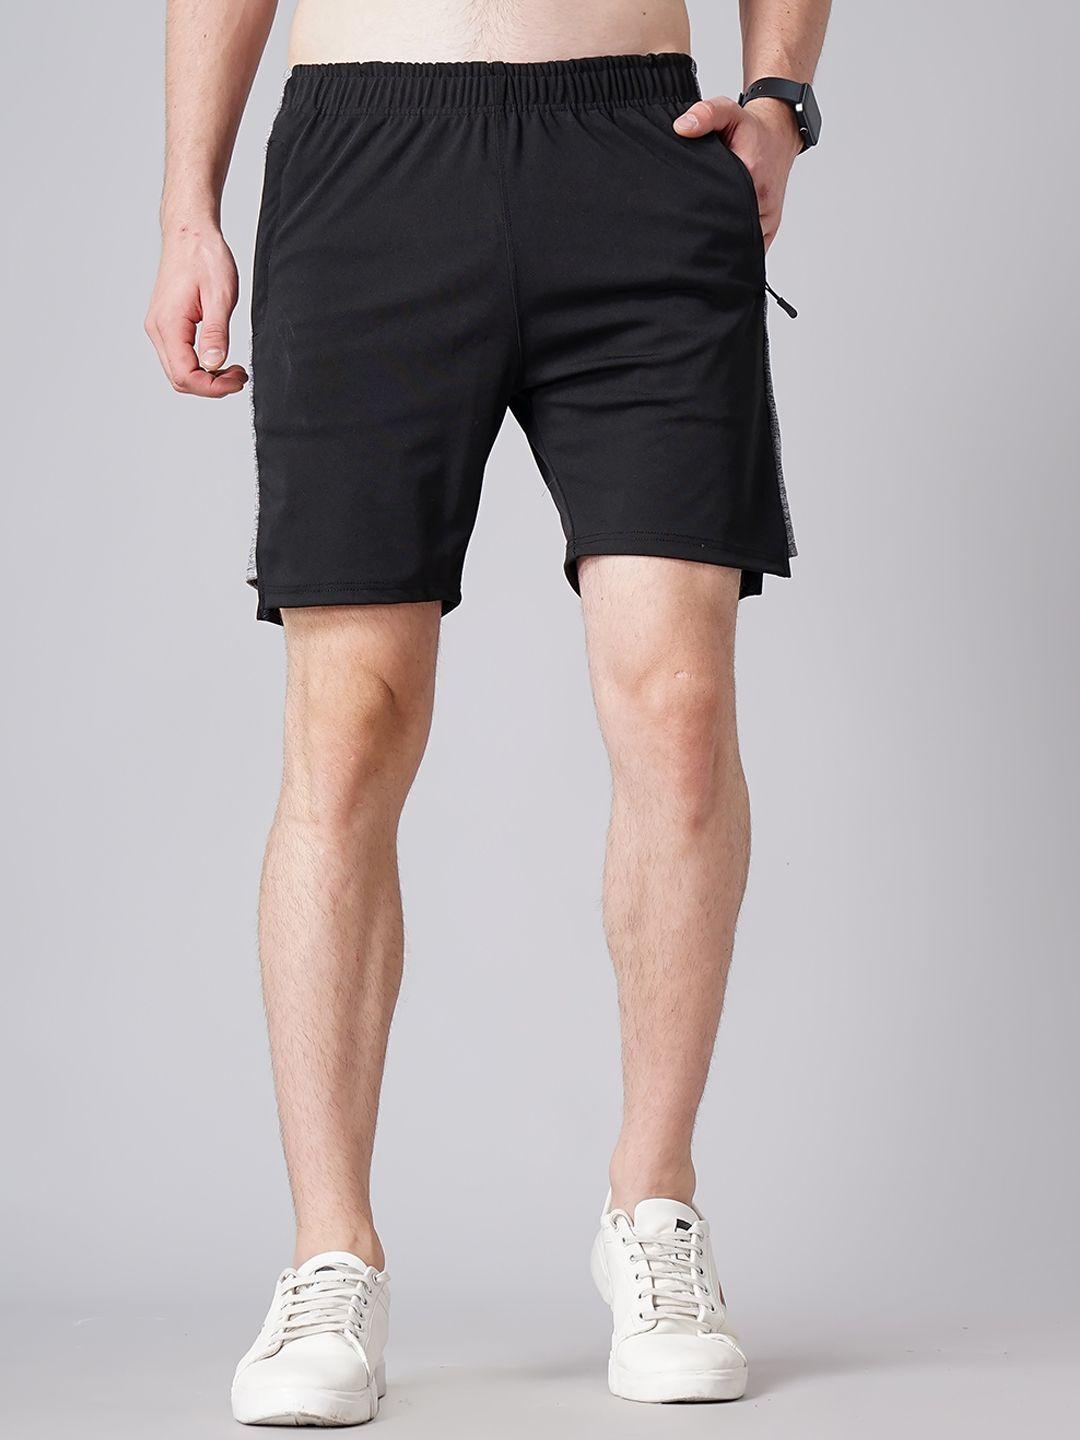 madsto-plus-size-men-cotton-slim-fit-shorts